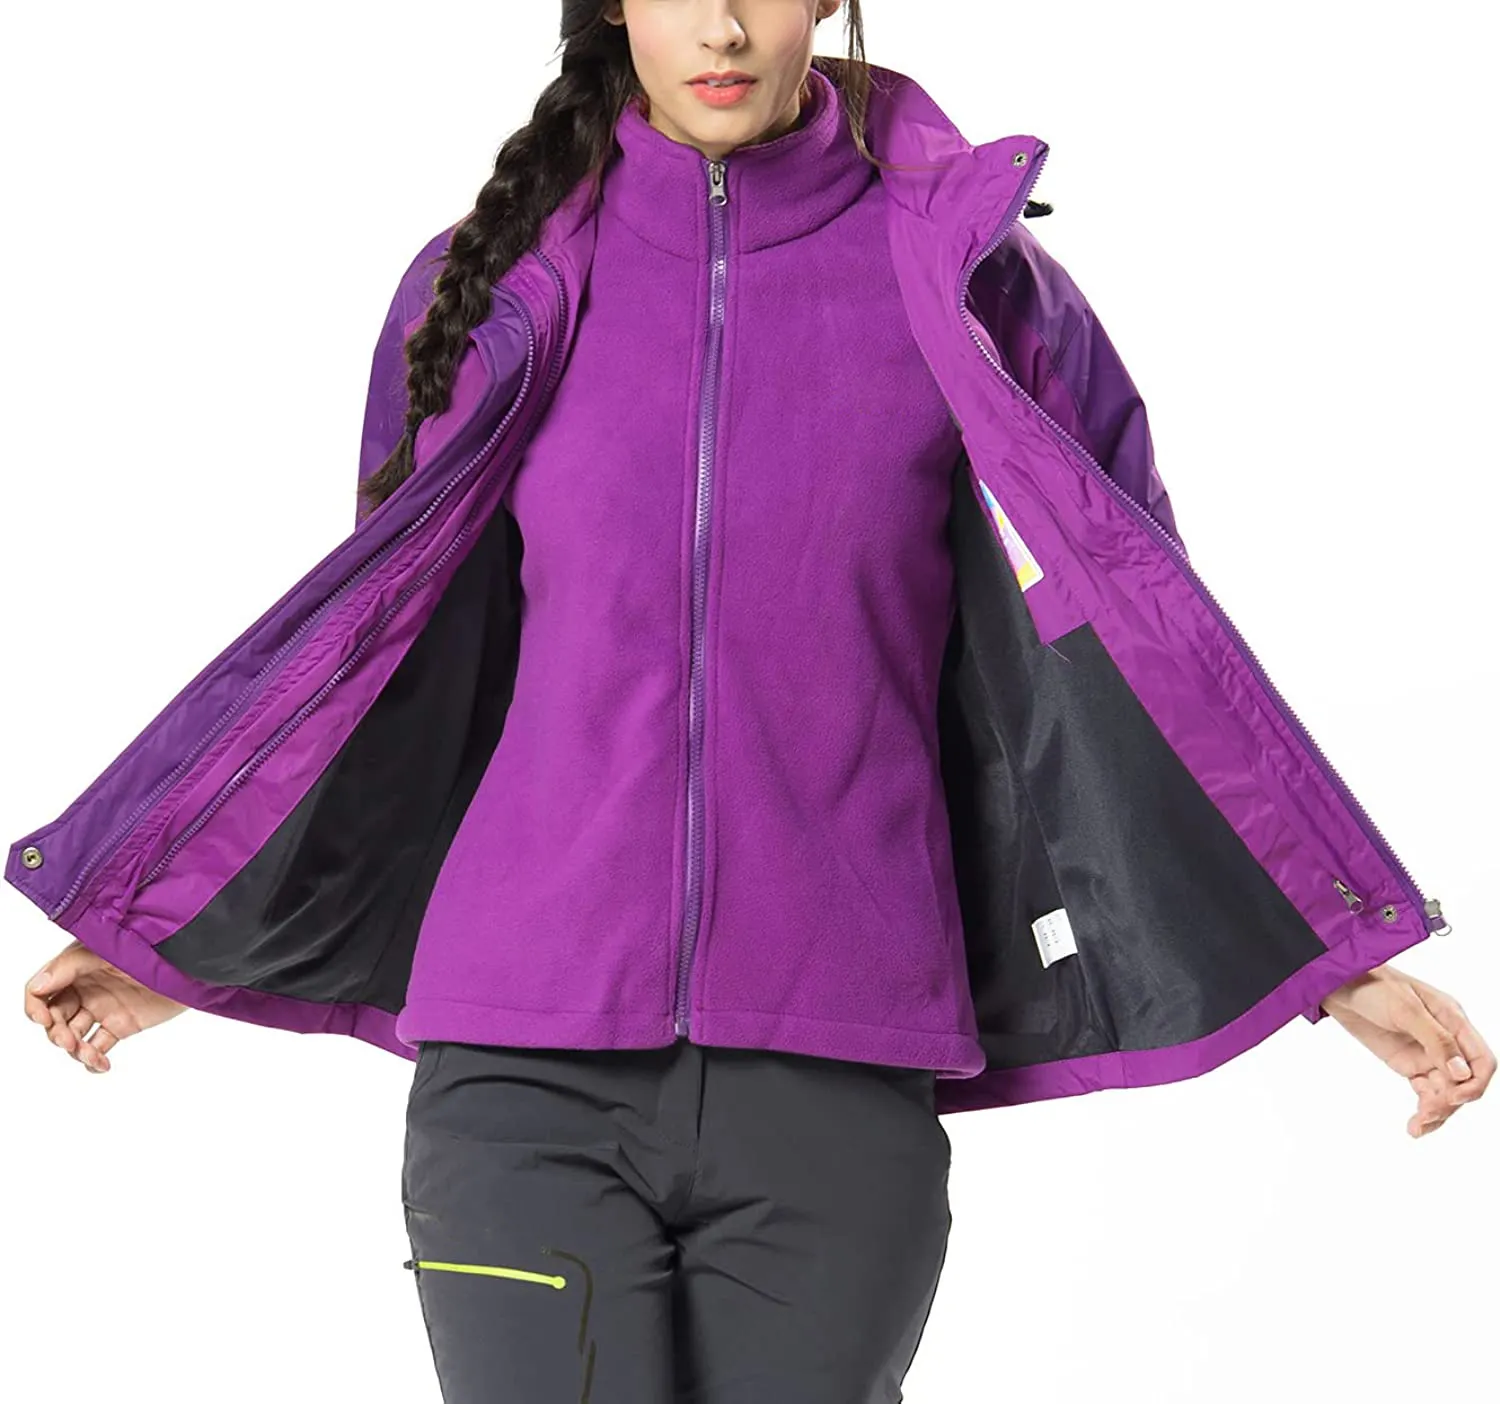 High Quality Manufacturer Branded Women's Winter Coats 3-in-1 Snow Ski Jacket Water Resistant Windproof Fleece Winter Jacket